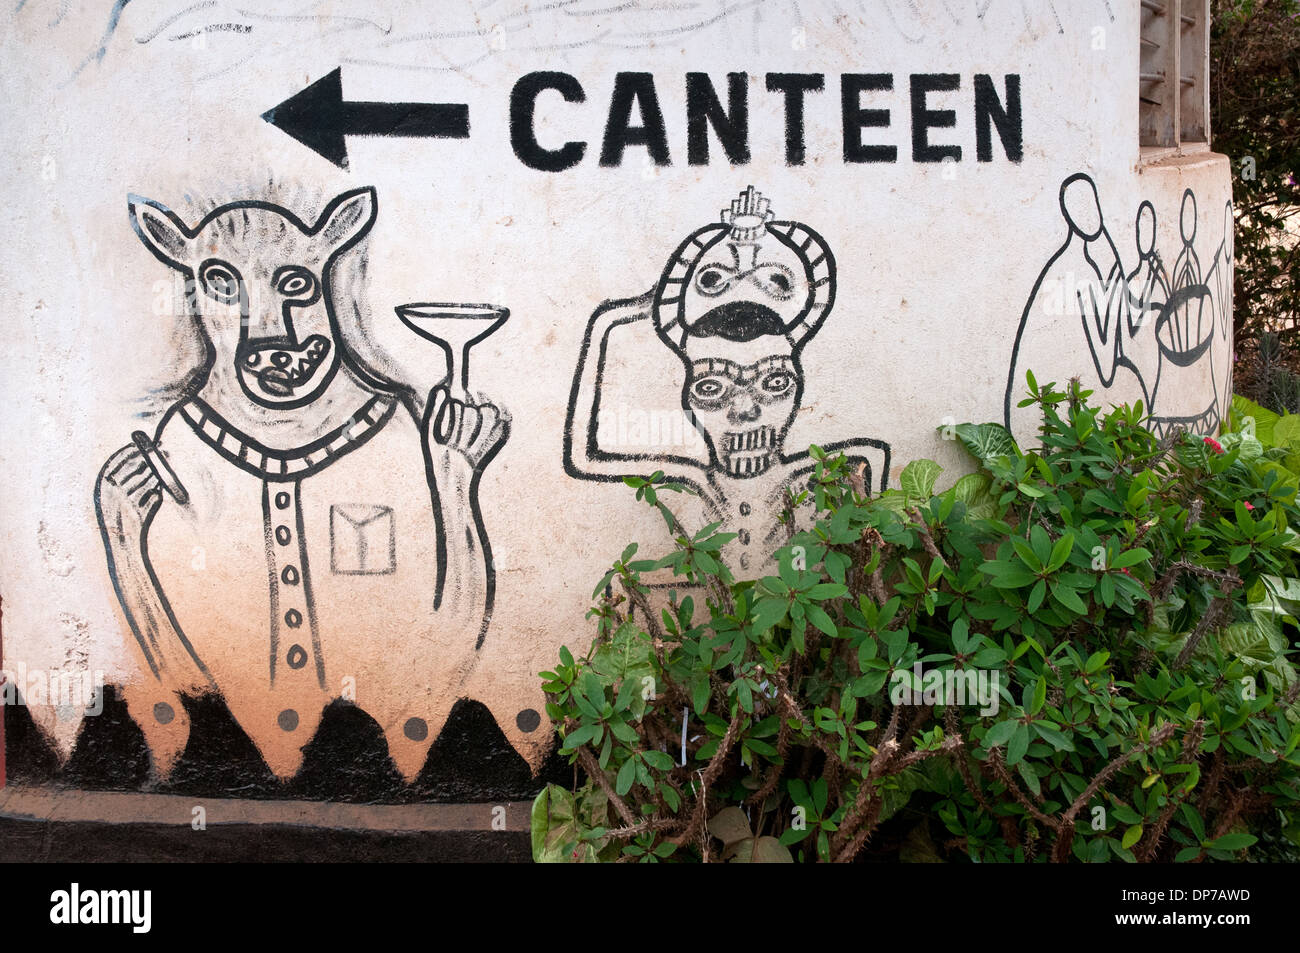 Trabajo de arte africano imaginativos dibujos y graffiti en el lado carretera duka parada turística comercial justo al norte de Namanga Kenya África Foto de stock